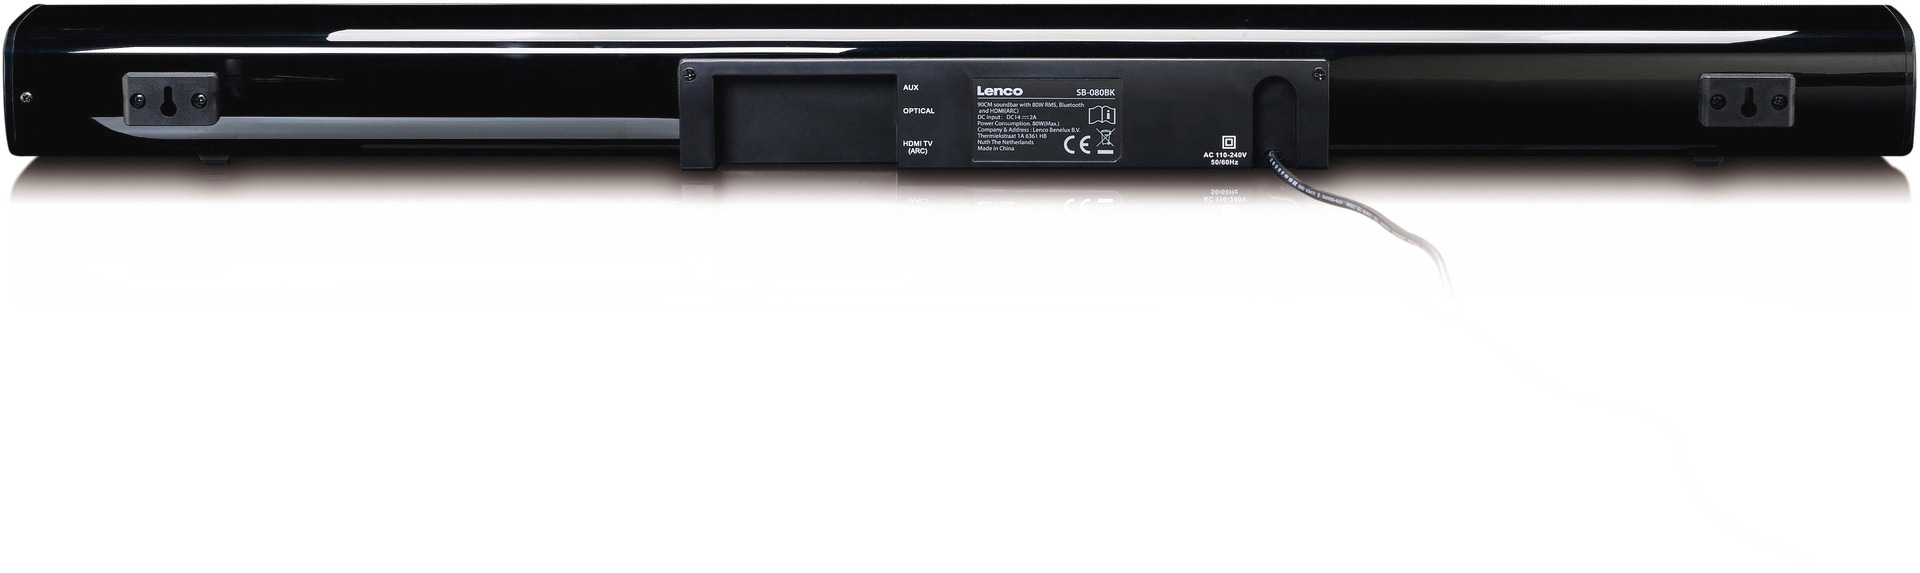 Lenco Soundbar »SB-080 Soundbar 80W RMS mit eingebautem Subwoofer«, USB, Bluetooth, HDMI (ARC), Digital Optical, AUX